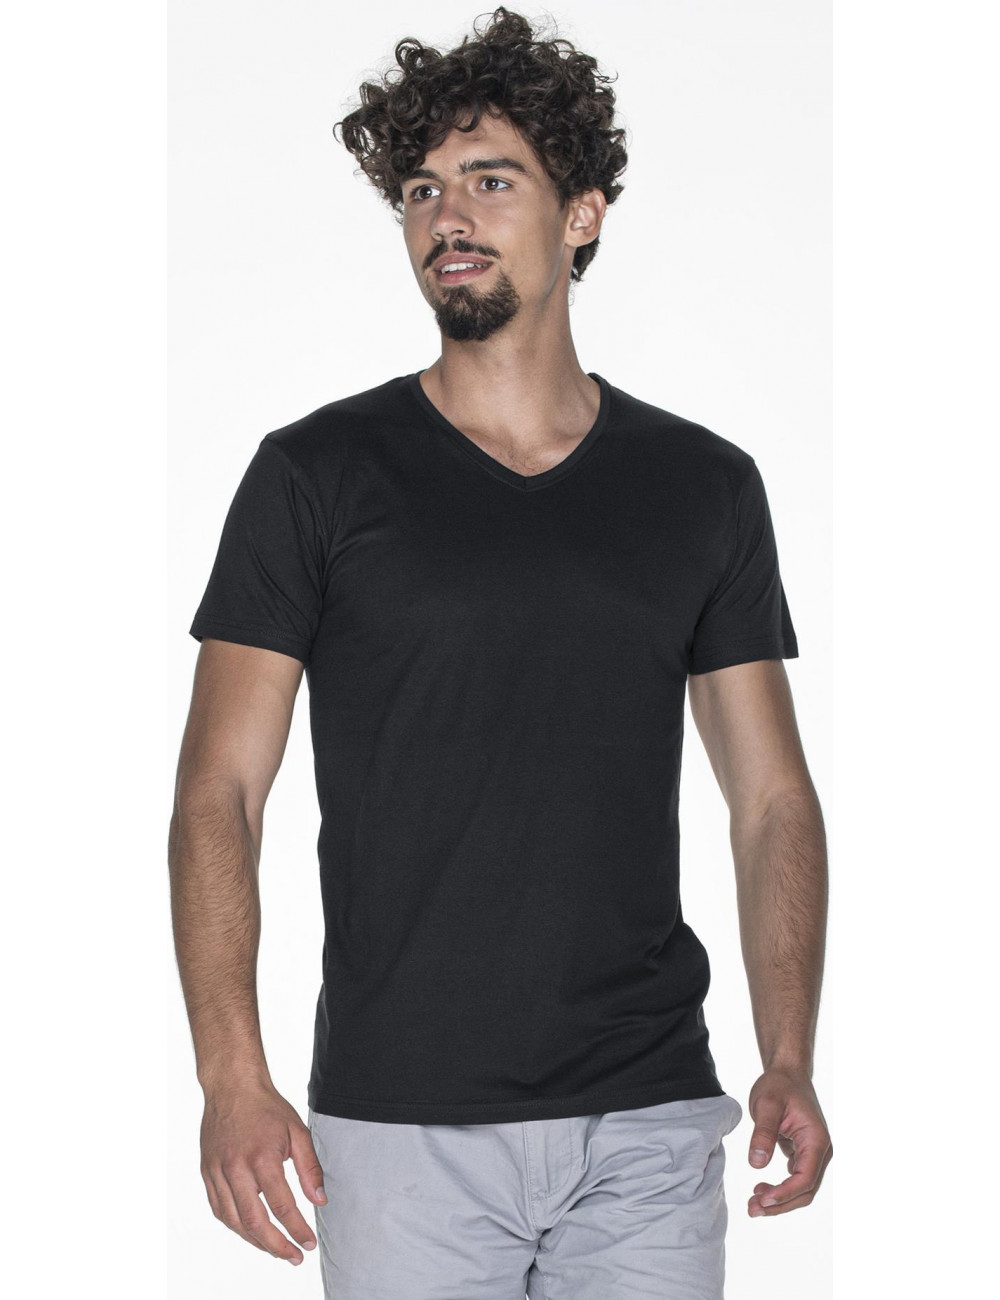 Herren-T-Shirt mit V-Ausschnitt in Schwarz von Promostars